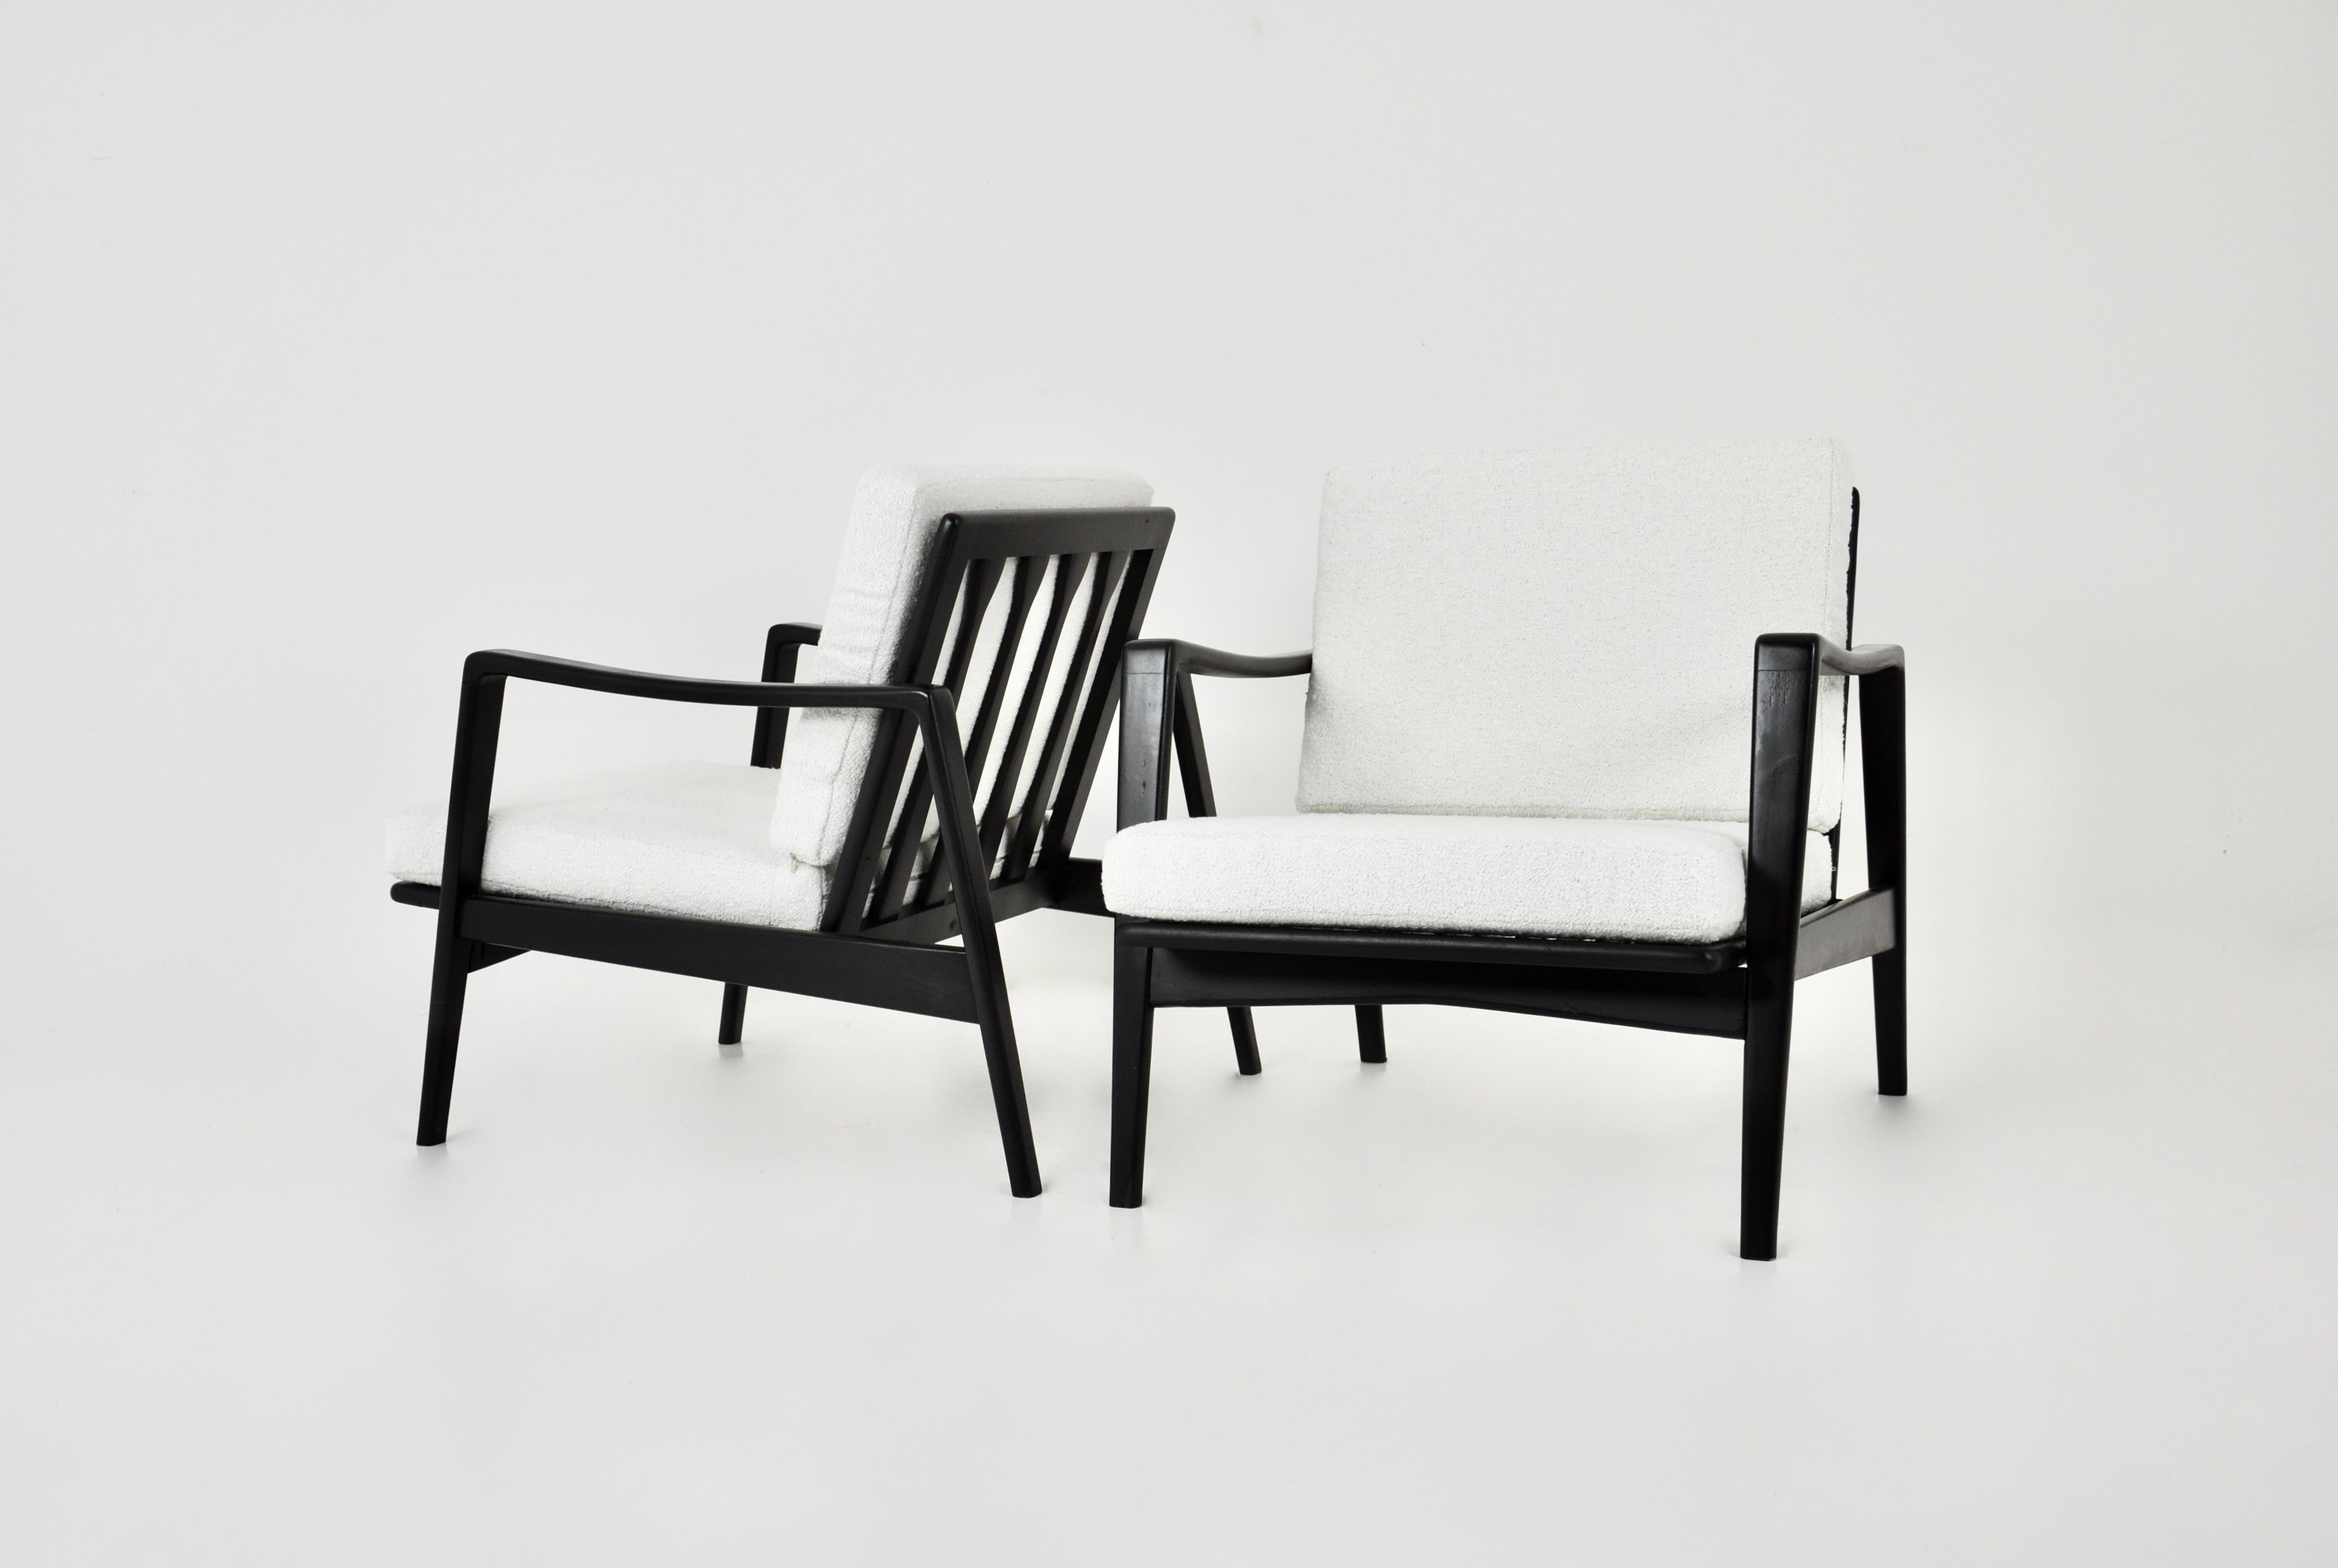 Paar Sessel aus Teakholz. Sitz aus Schaumstoff, bezogen mit vanillefarbenem Stoff und abnehmbarem Bezug. Maße: Sitzhöhe 38cm. Leichte Abnutzungserscheinungen durch die Zeit und den Gebrauch der Stühle.